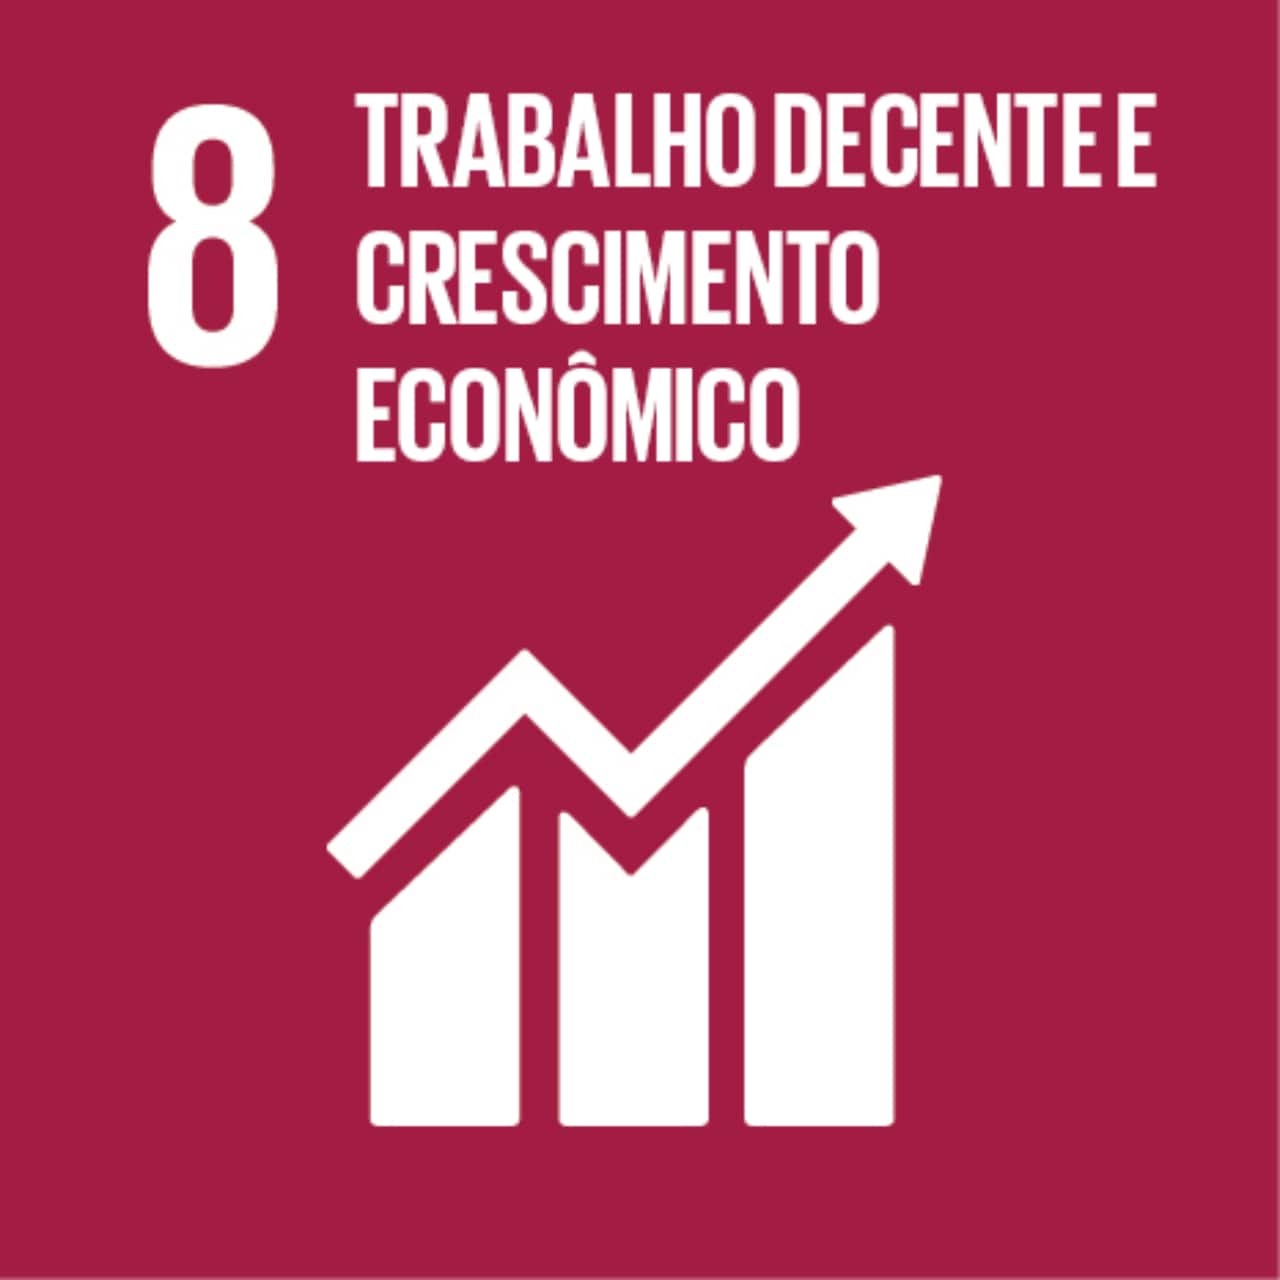 Imagem que representa o ODS número Oito – Trabalho decente e crescimento econômico, com fundo bordô e o ícone de barras gráficas e uma seta que indica crescimento.